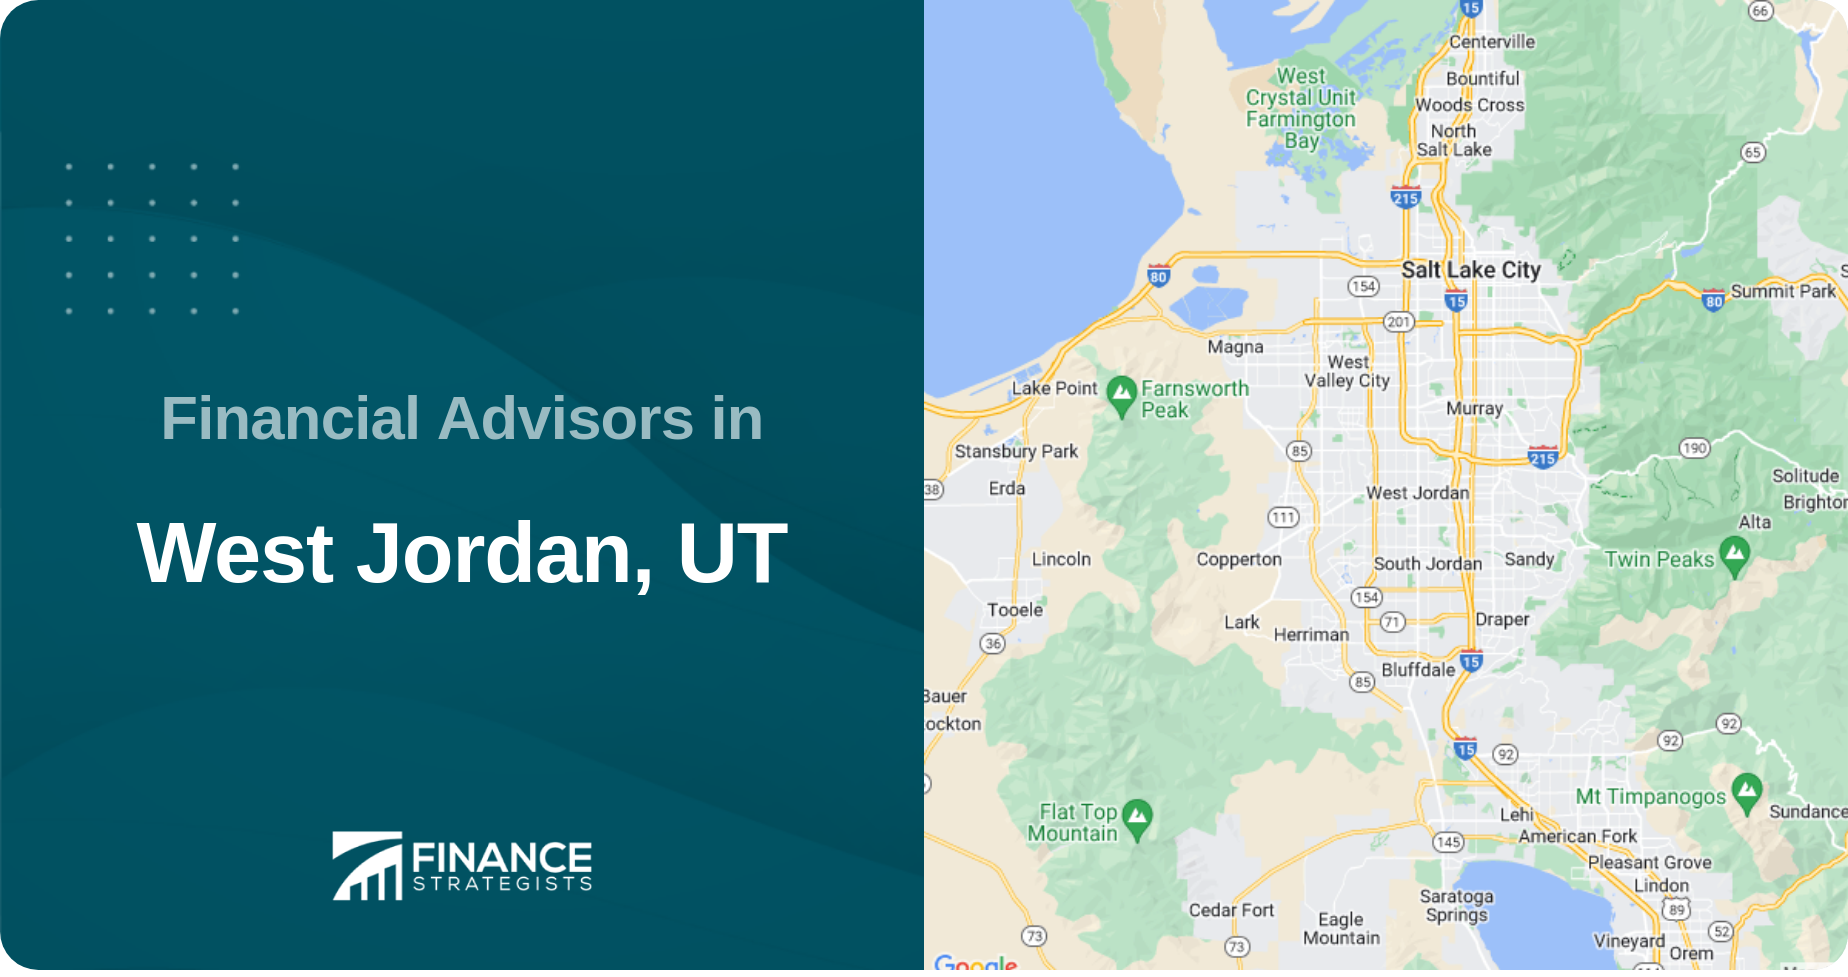 Financial Advisors in West Jordan, UT